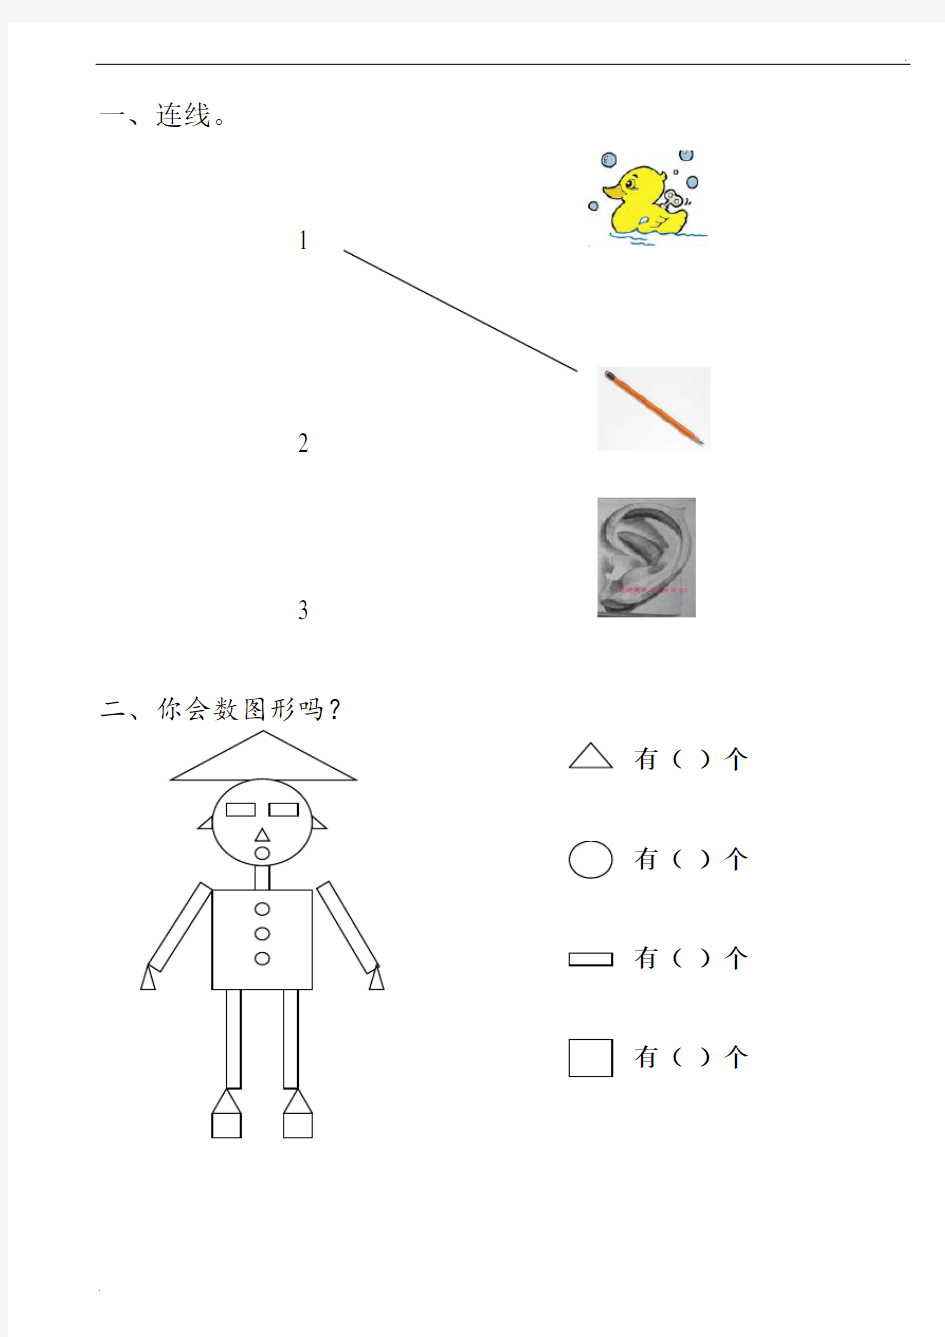 幼儿园中班数学试题 (5)